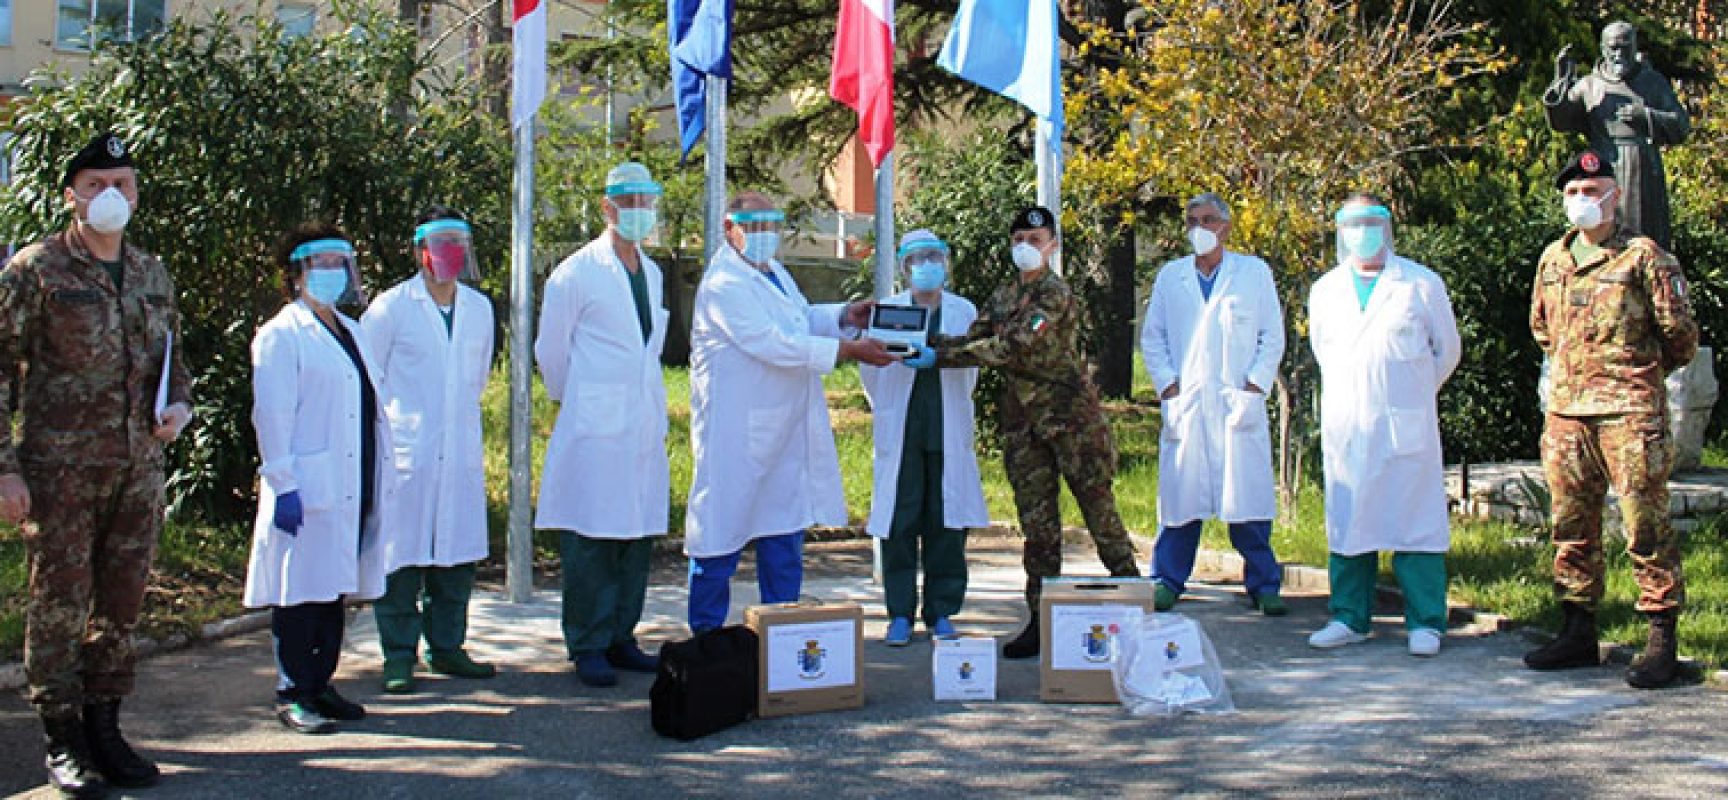 L’82° Reggimento Fanteria “Torino” dona ventilatore polmonare all’ospedale di Bisceglie